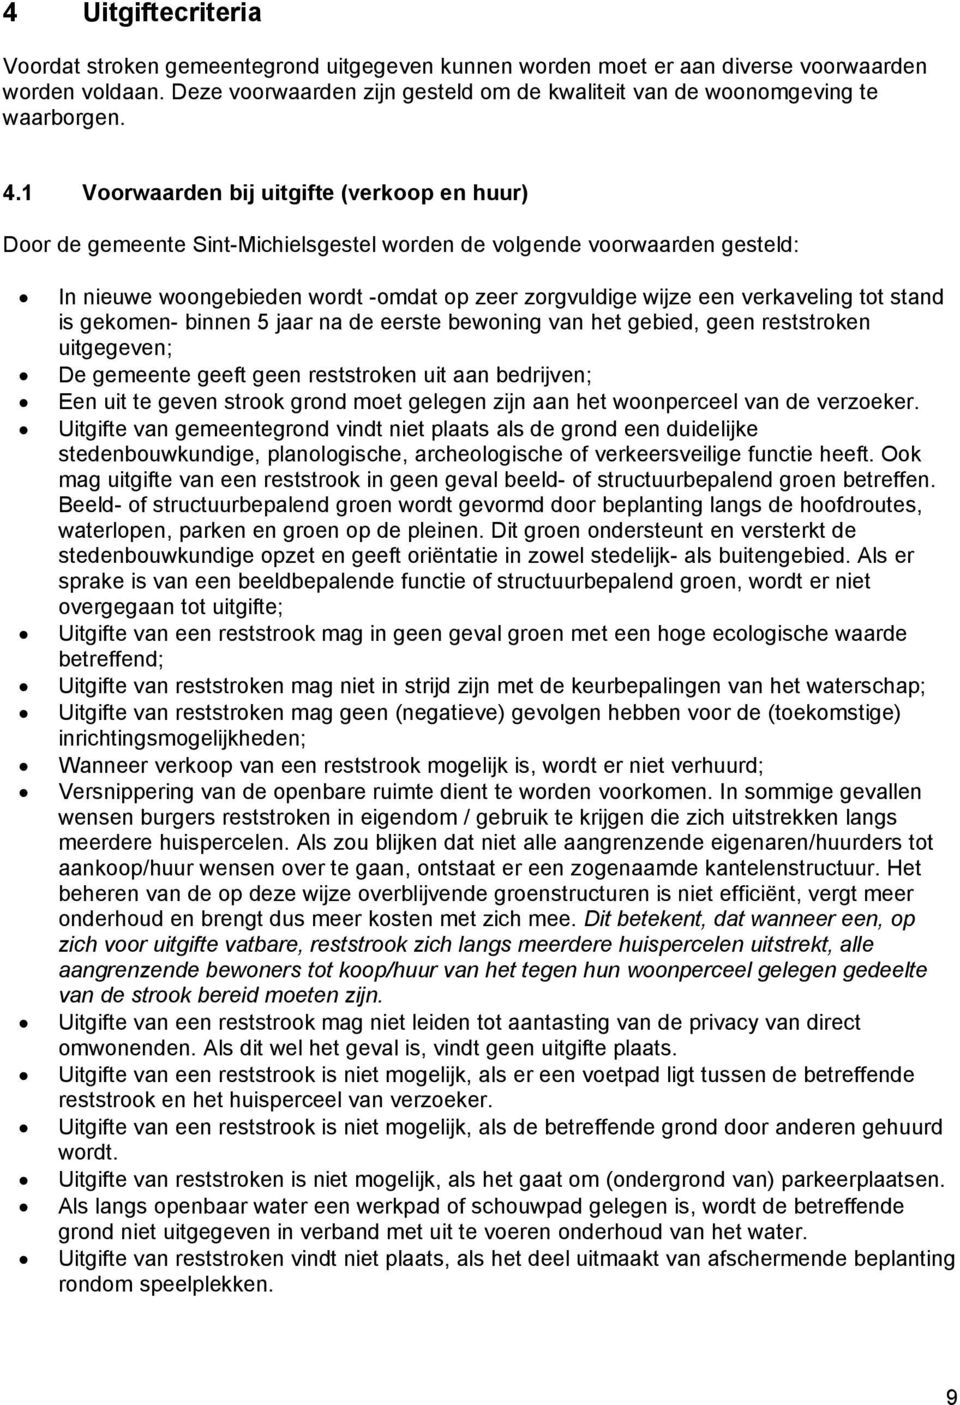 1 Voorwaarden bij uitgifte (verkoop en huur) Door de gemeente Sint-Michielsgestel worden de volgende voorwaarden gesteld: In nieuwe woongebieden wordt -omdat op zeer zorgvuldige wijze een verkaveling